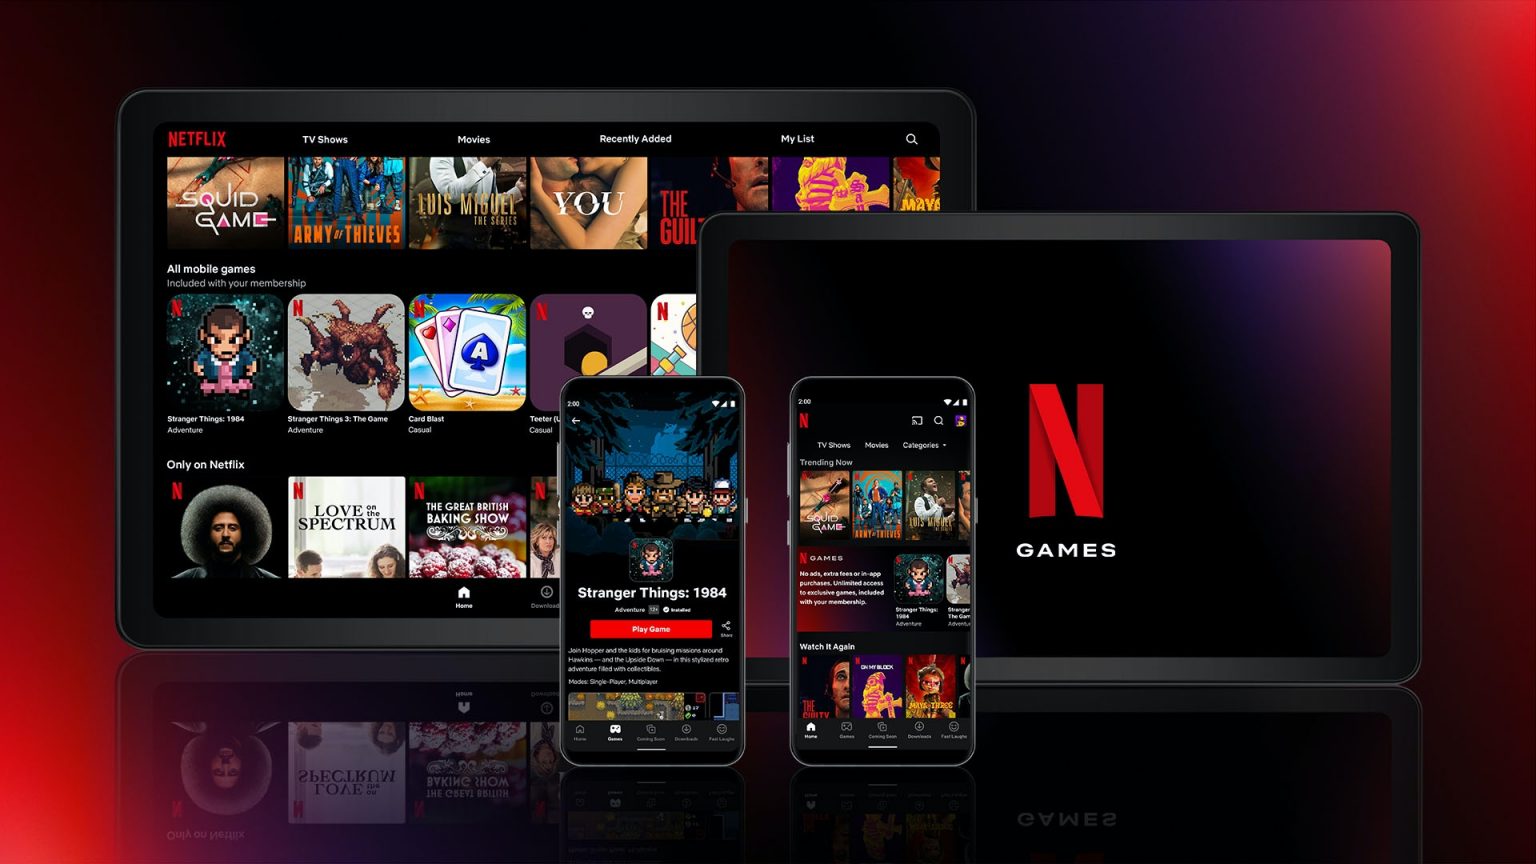 Netflix sprístupnil prvé hry čím testuje chystanú hernú službu Netflix Games